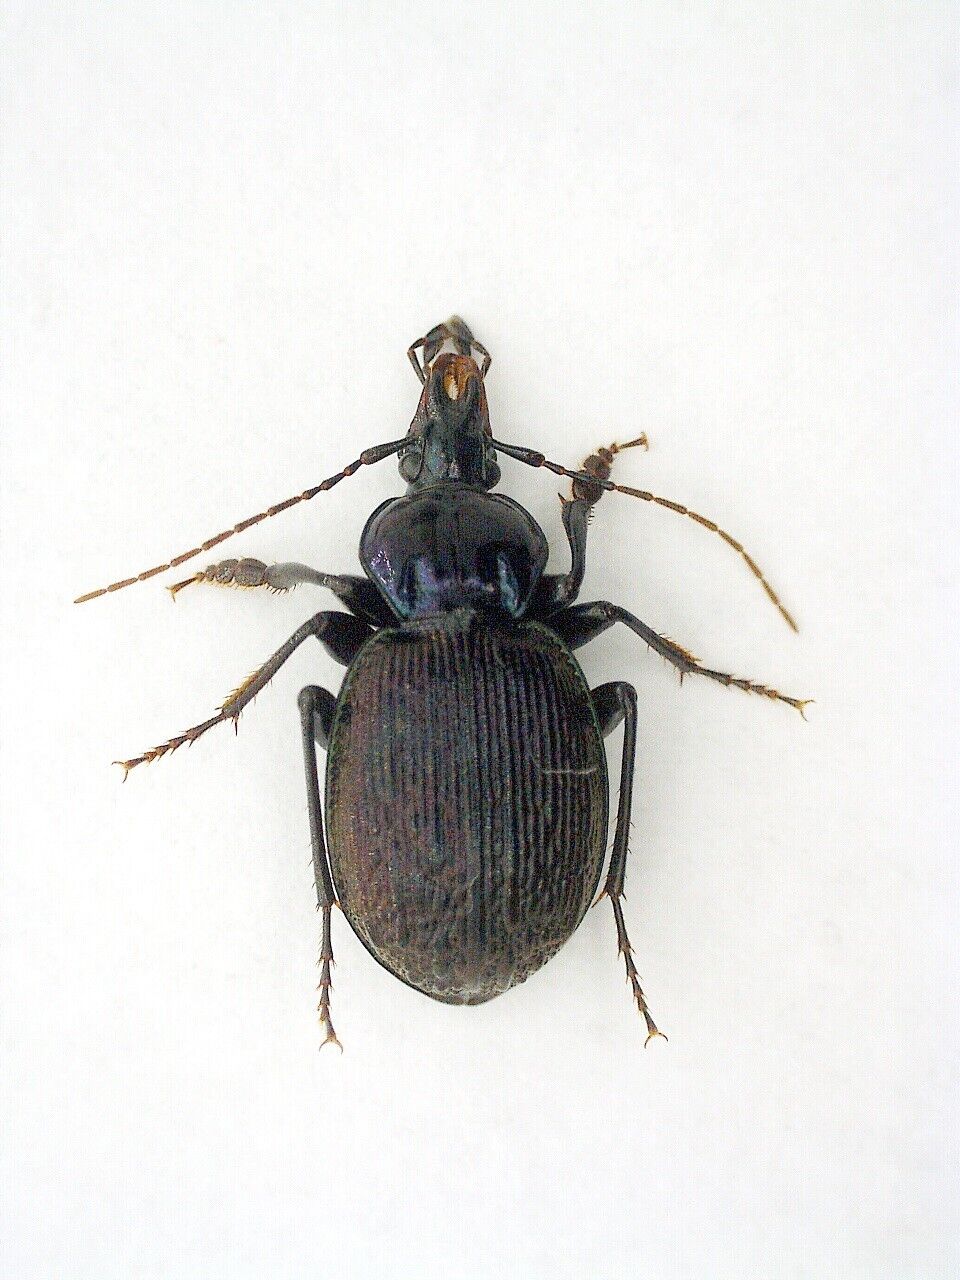 Carabidae, Carabinae, Cychrini Sphaeroderus stenostomus lecontei USA